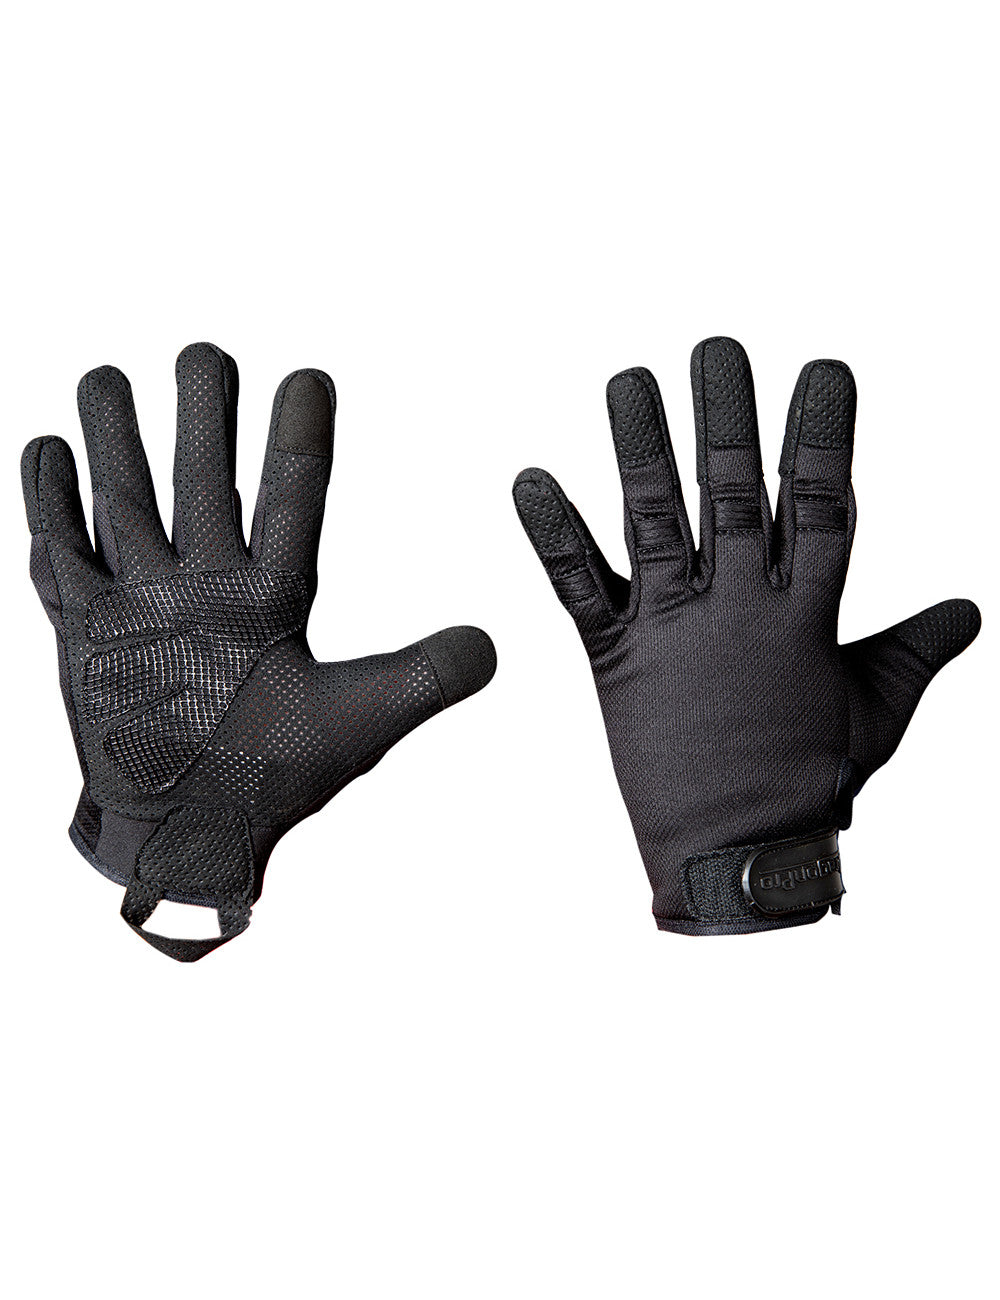 DRAGONPRO DP-GL002 LT Gloves Black